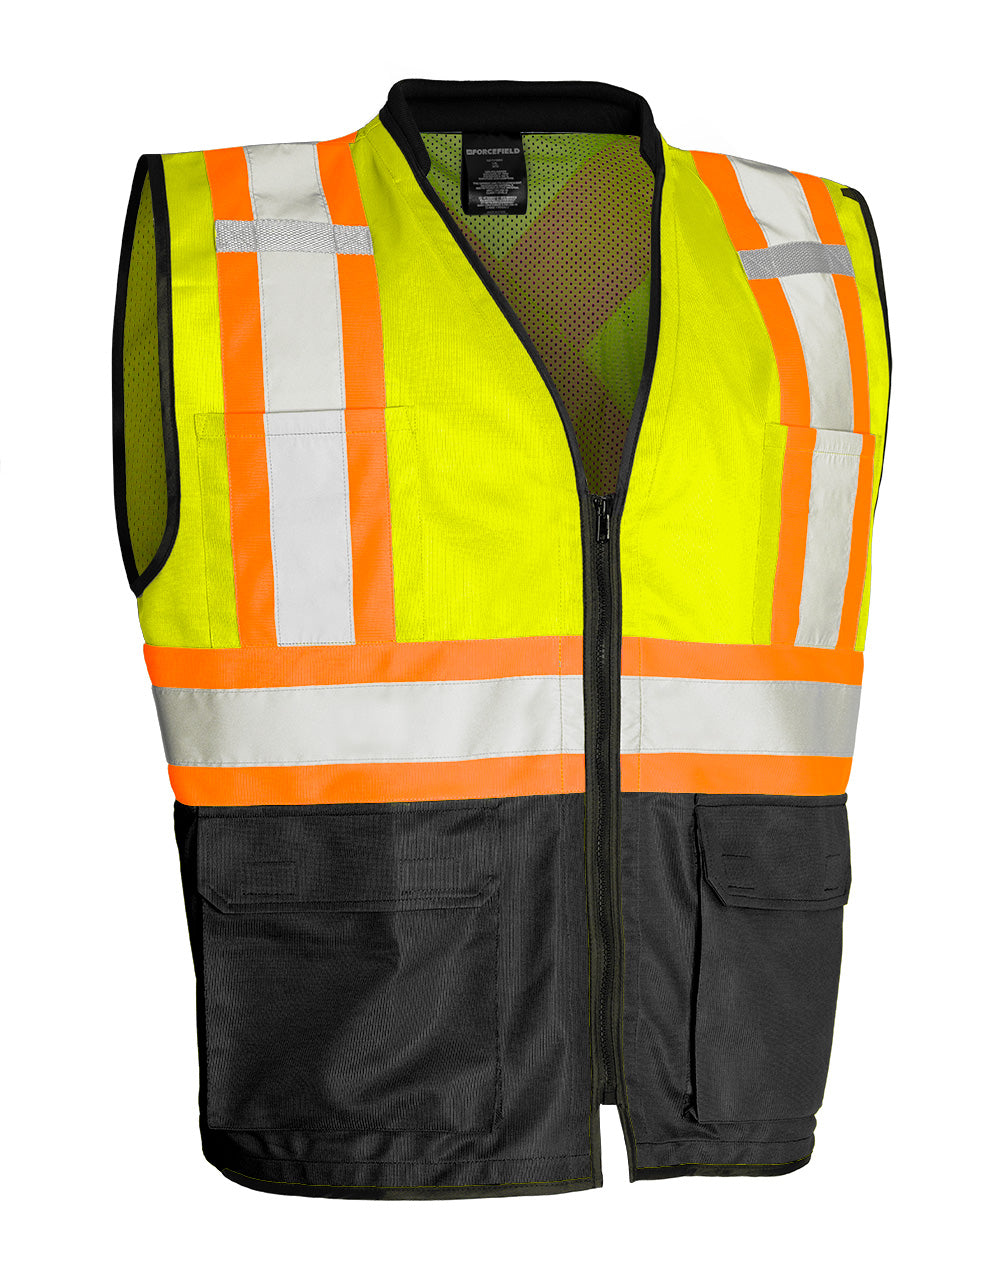 Gilet de sécurité routière haute visibilité avec fermeture éclair sur le devant, tricot polyester, 3 tailles